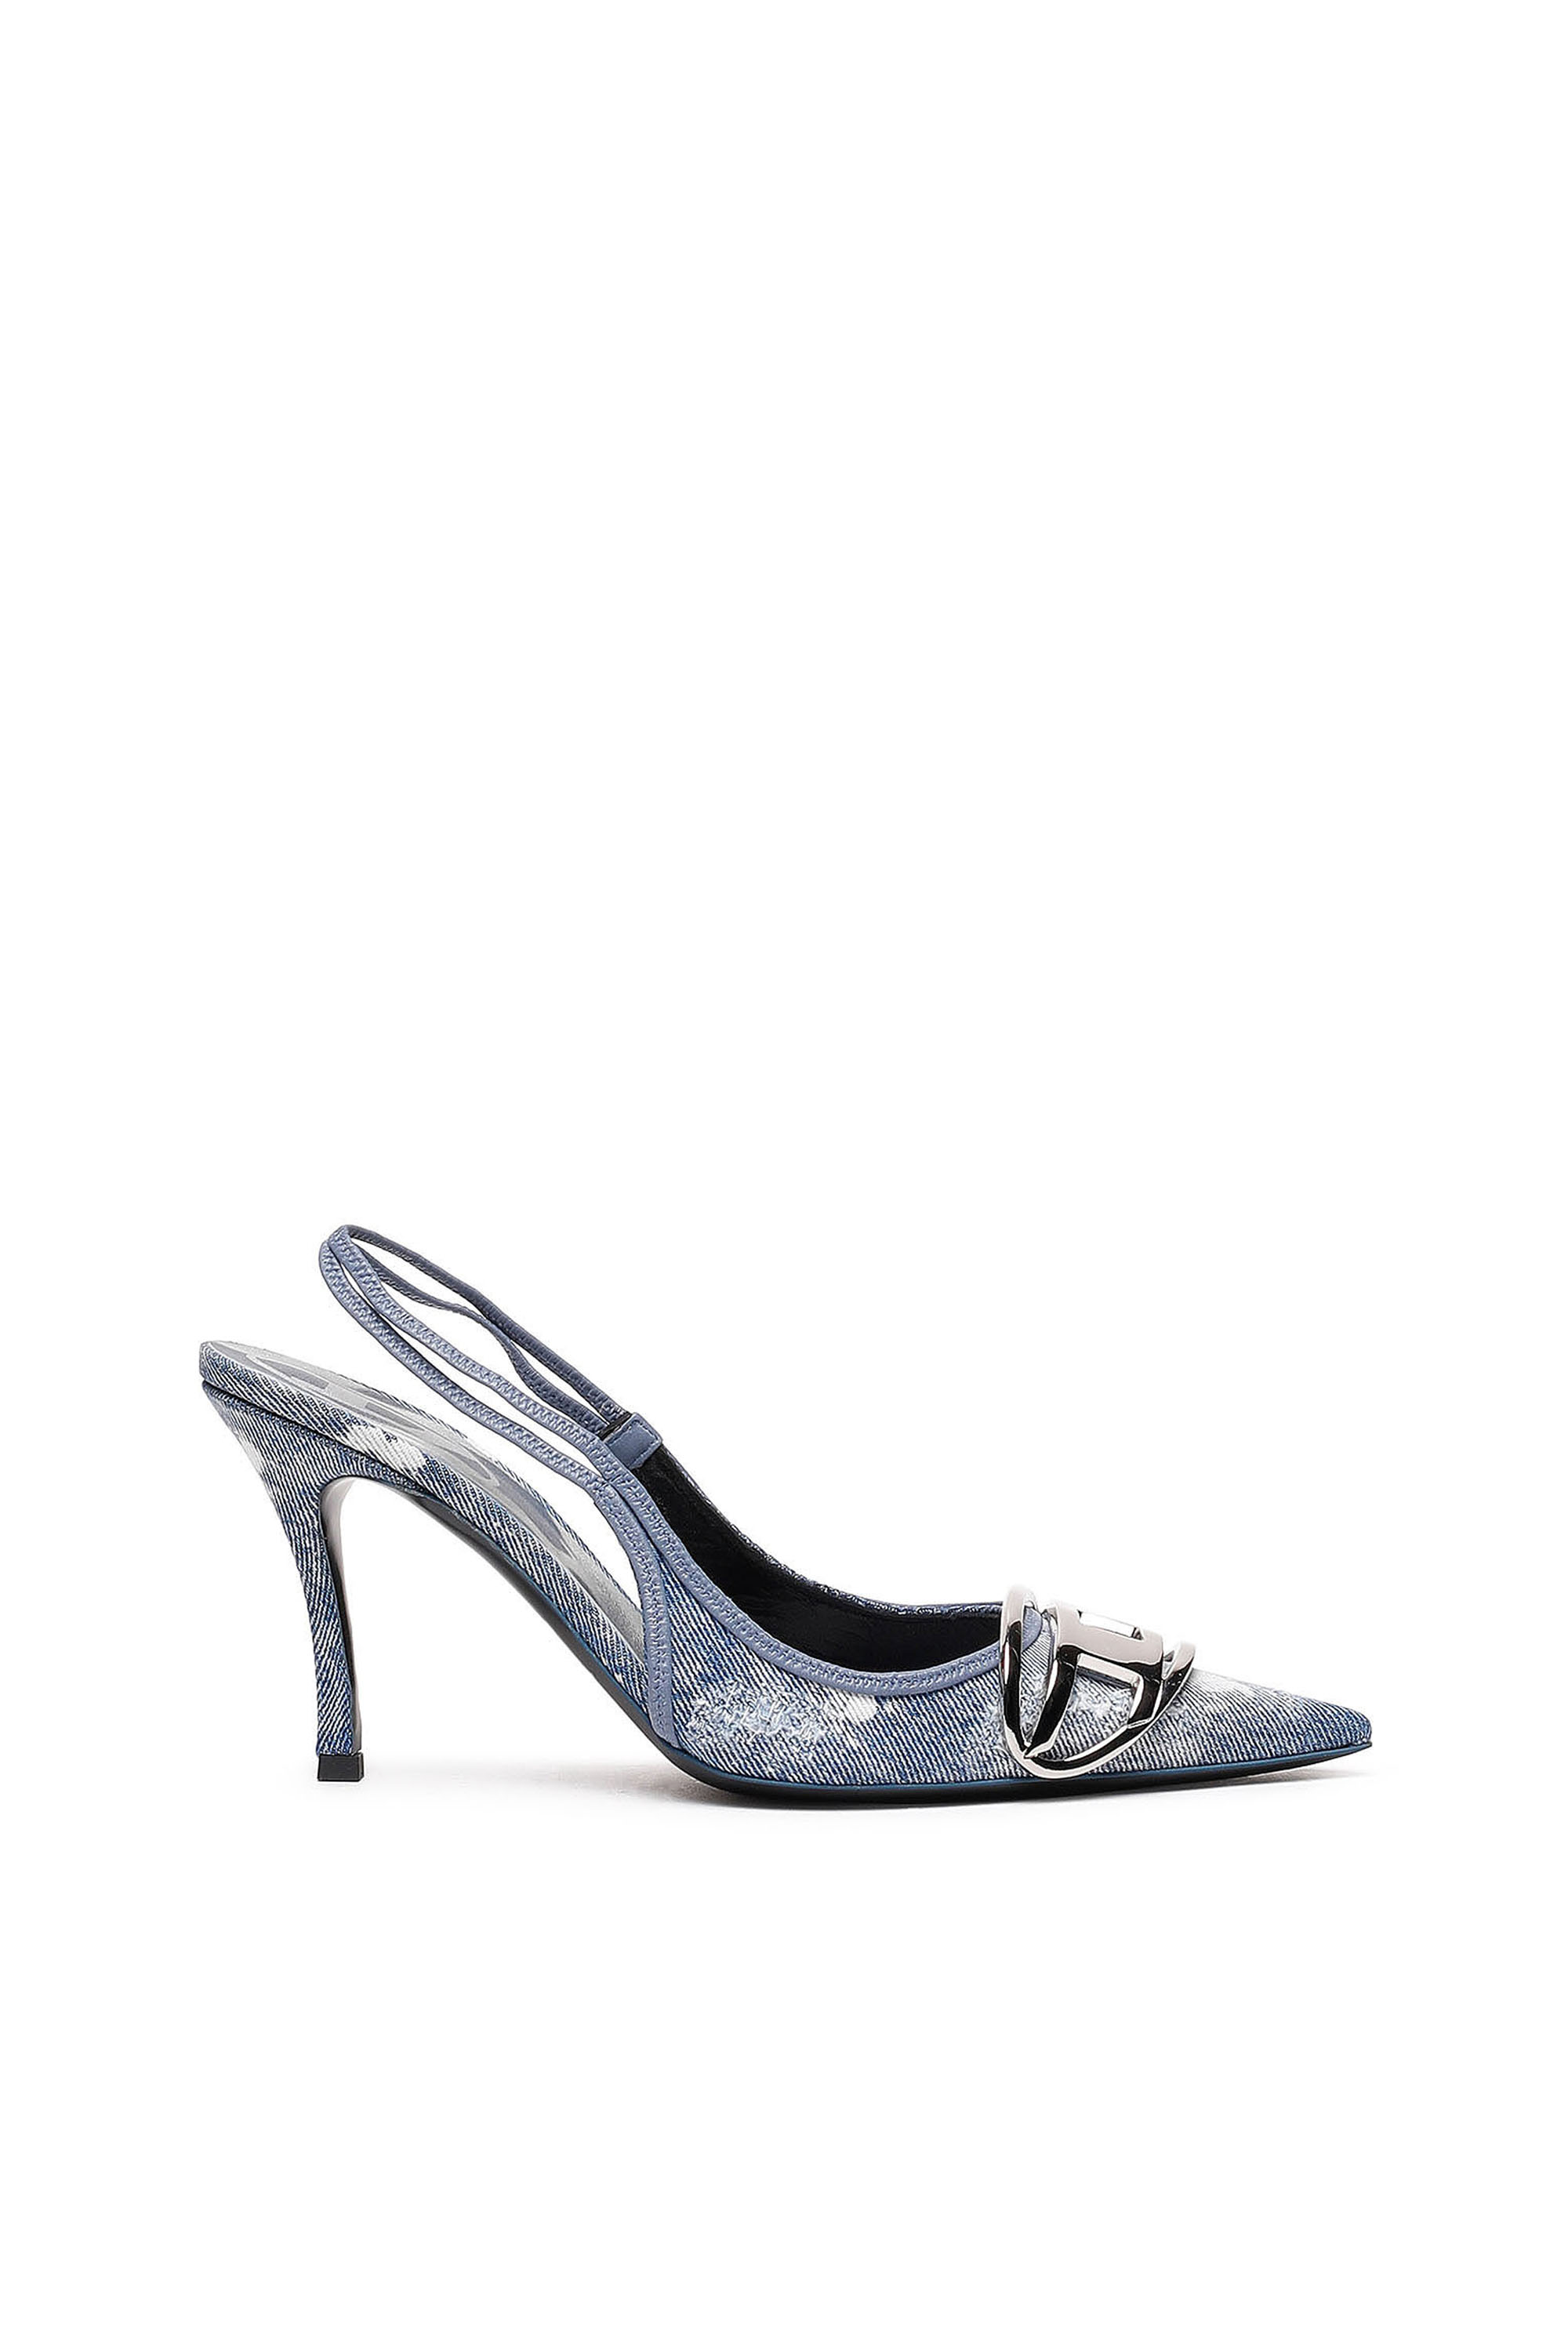 Diesel - D-Venus SB - Zapatos de salón sin talón en denim desgastado - Décolleté - Mujer - Azul marino